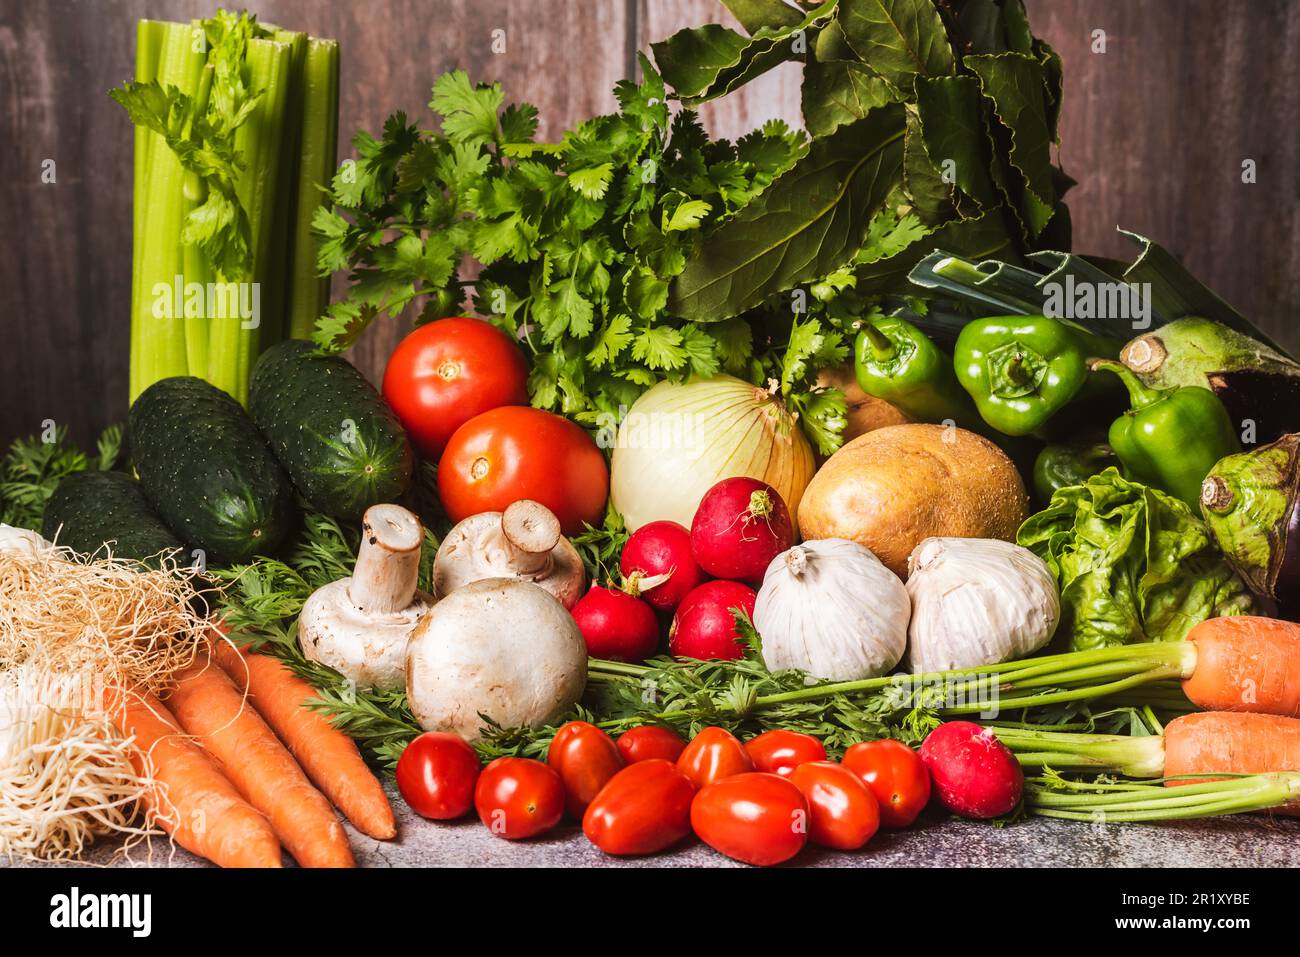 Stillleben auf der Grundlage von Gemüse wie Sellerie, Porree, Tomaten, Paprika, Karotten, Pilze, Auberginen, Kartoffeln, Zwiebeln, Knoblauch, Gurke und Radieschen Stockfoto